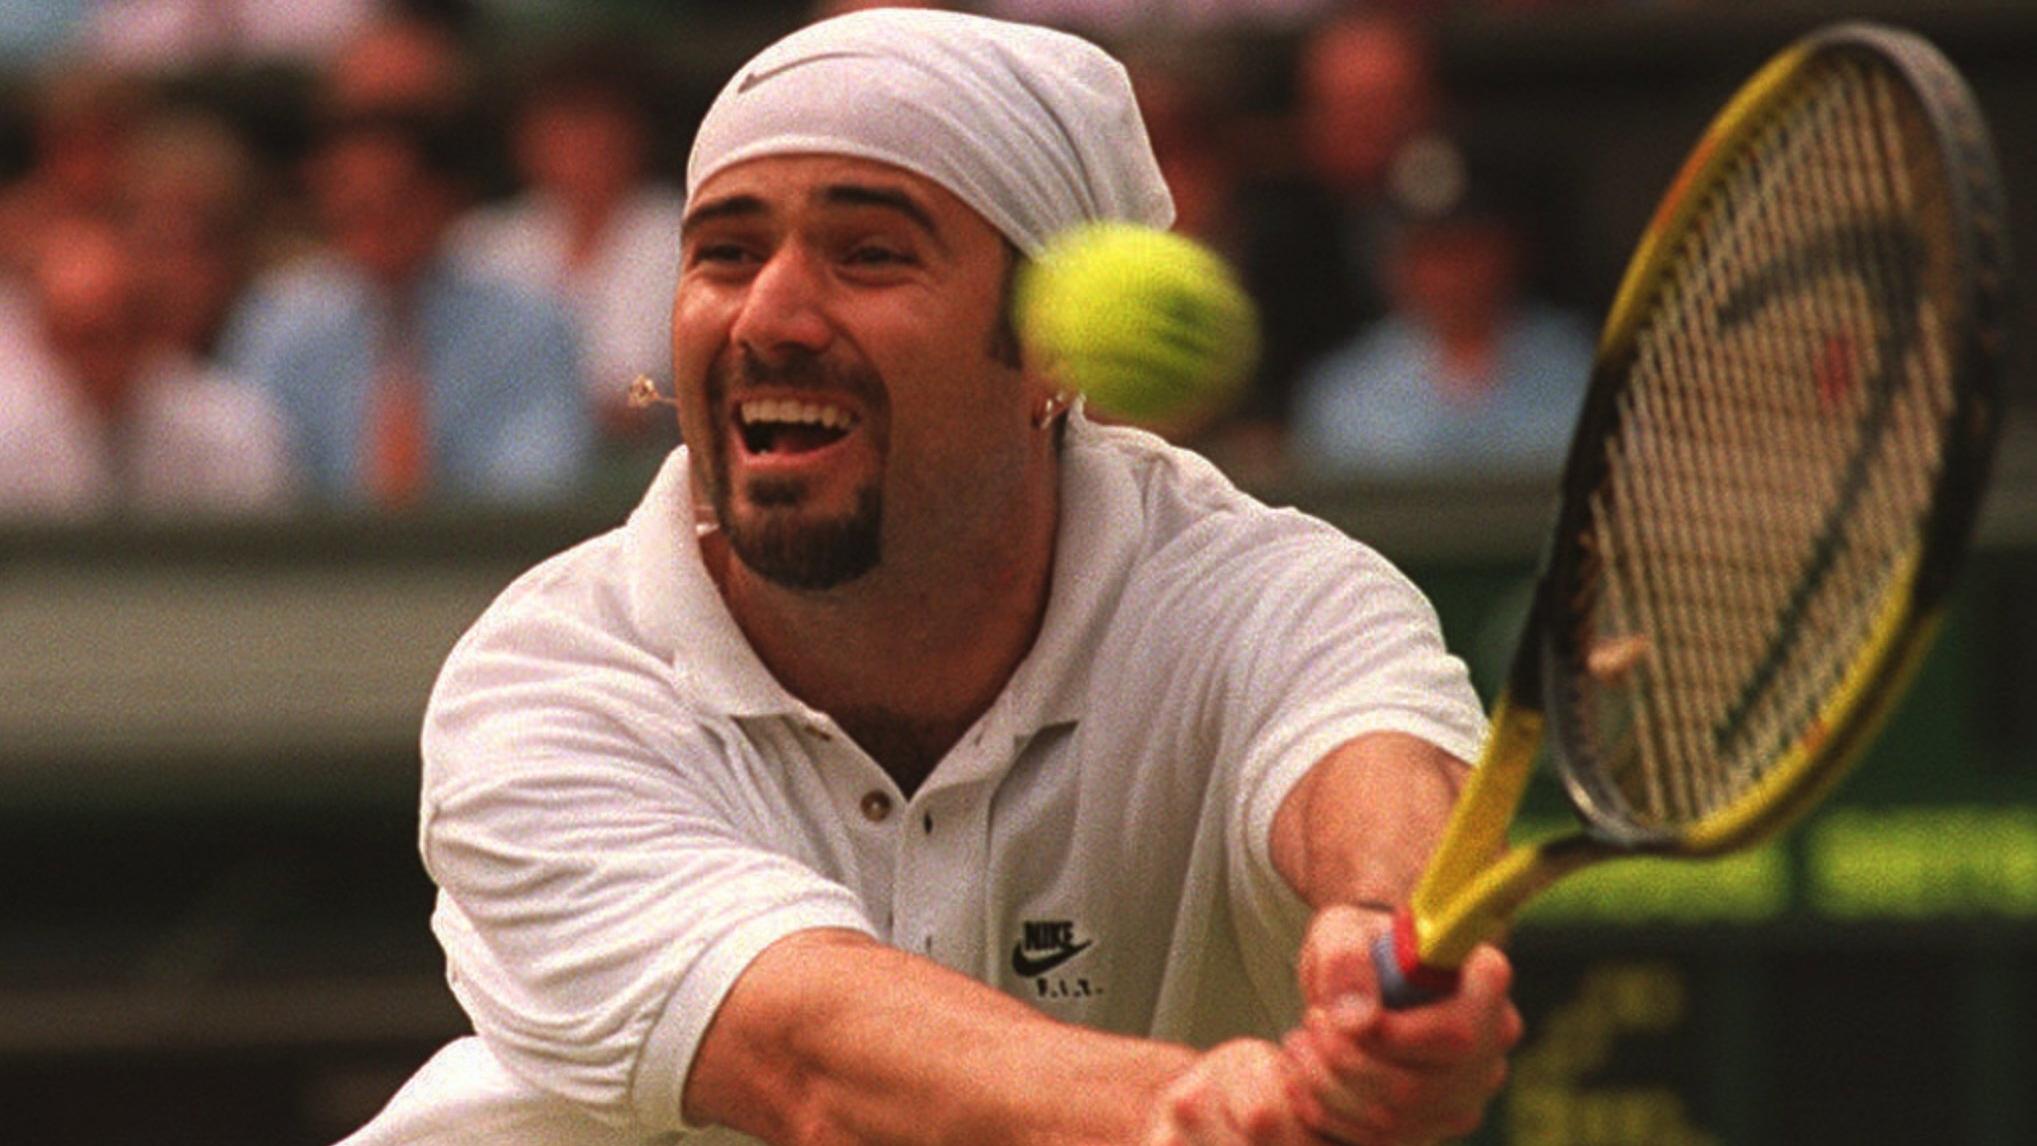 ARCHIV - 20.06.1995, Großbritannien, Wimbledon: Andre Agassi aus den USA in Aktion gegen Eltingh aus den Niederlanden im Viertelfinale von Wimbledon . (zu dpa: «Andre Agassi feiert am 29. April seinen 50. Geburtstag») Foto: picture alliance / dpa +++